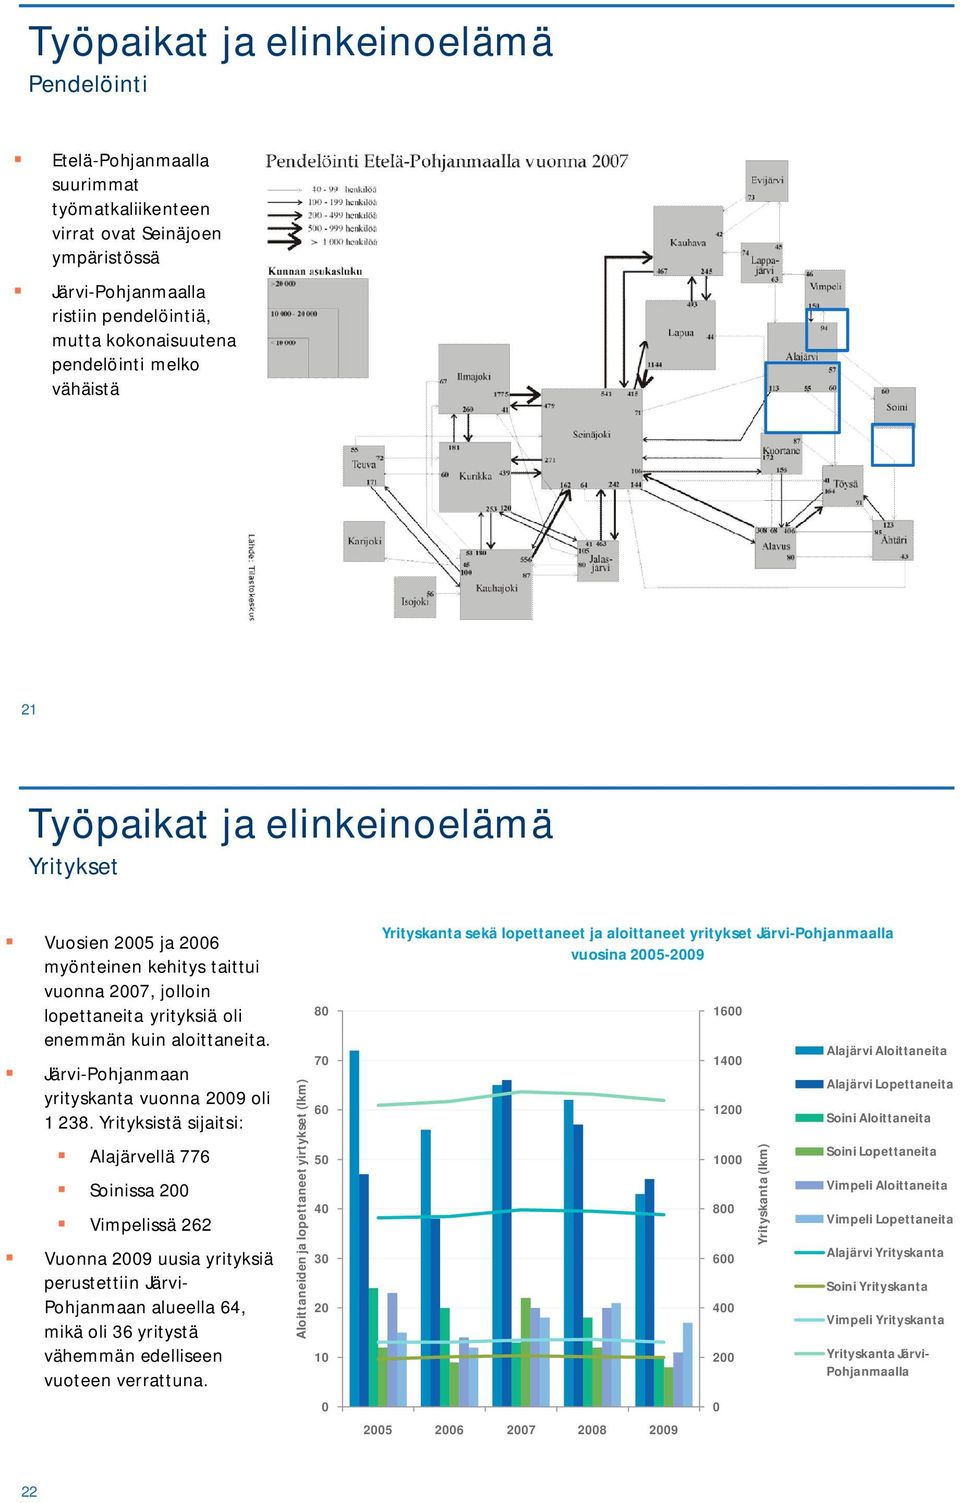 Järvi-Pohjanmaan yrityskanta vuonna 29 oli 1 238.